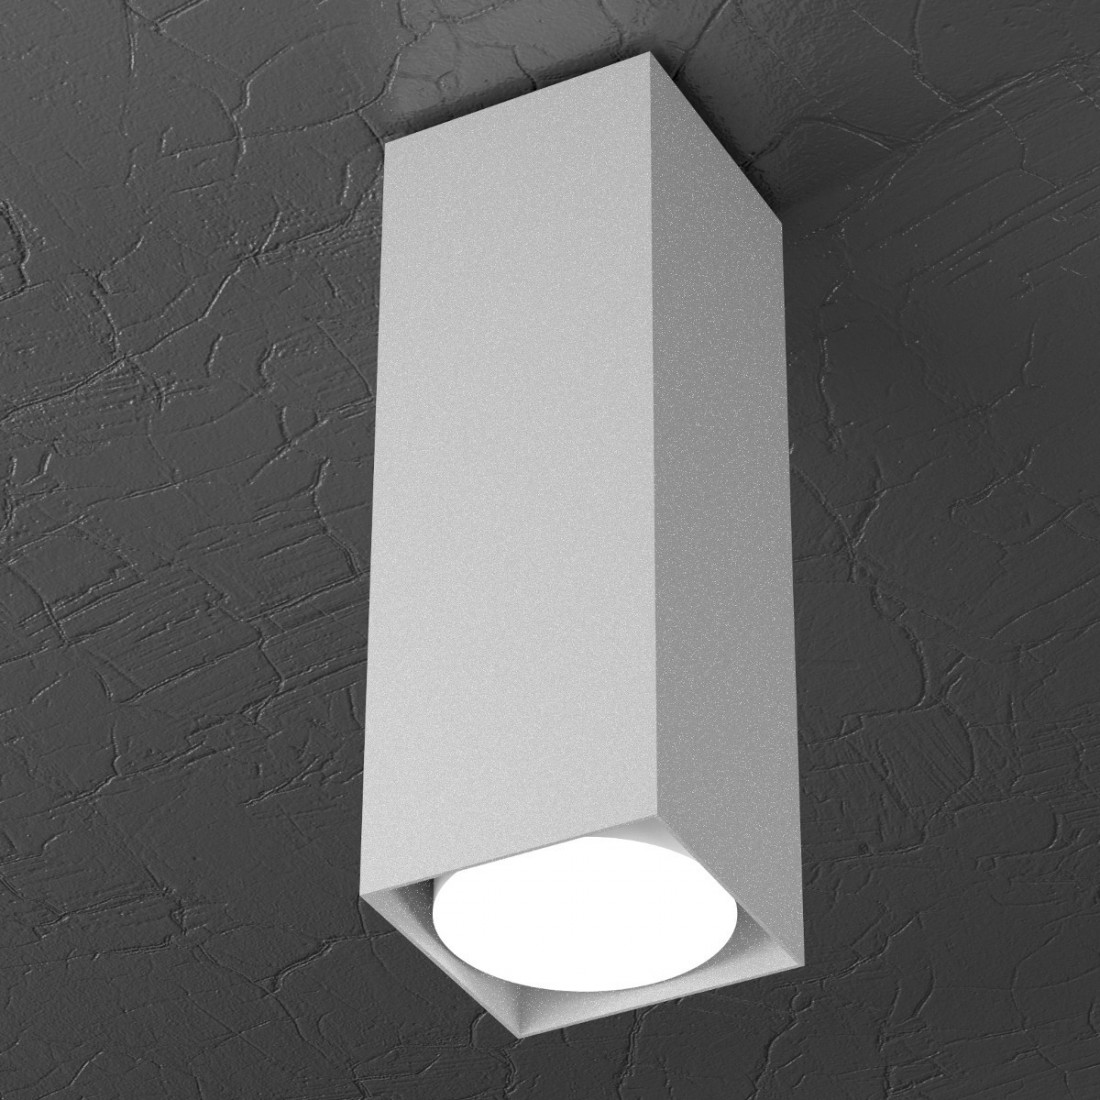 Plafonnier TP-PLATE 1129 PL25 Gx53 LED 8x8 blanc métal gris sable lampe plafonnier intérieur carré moderne